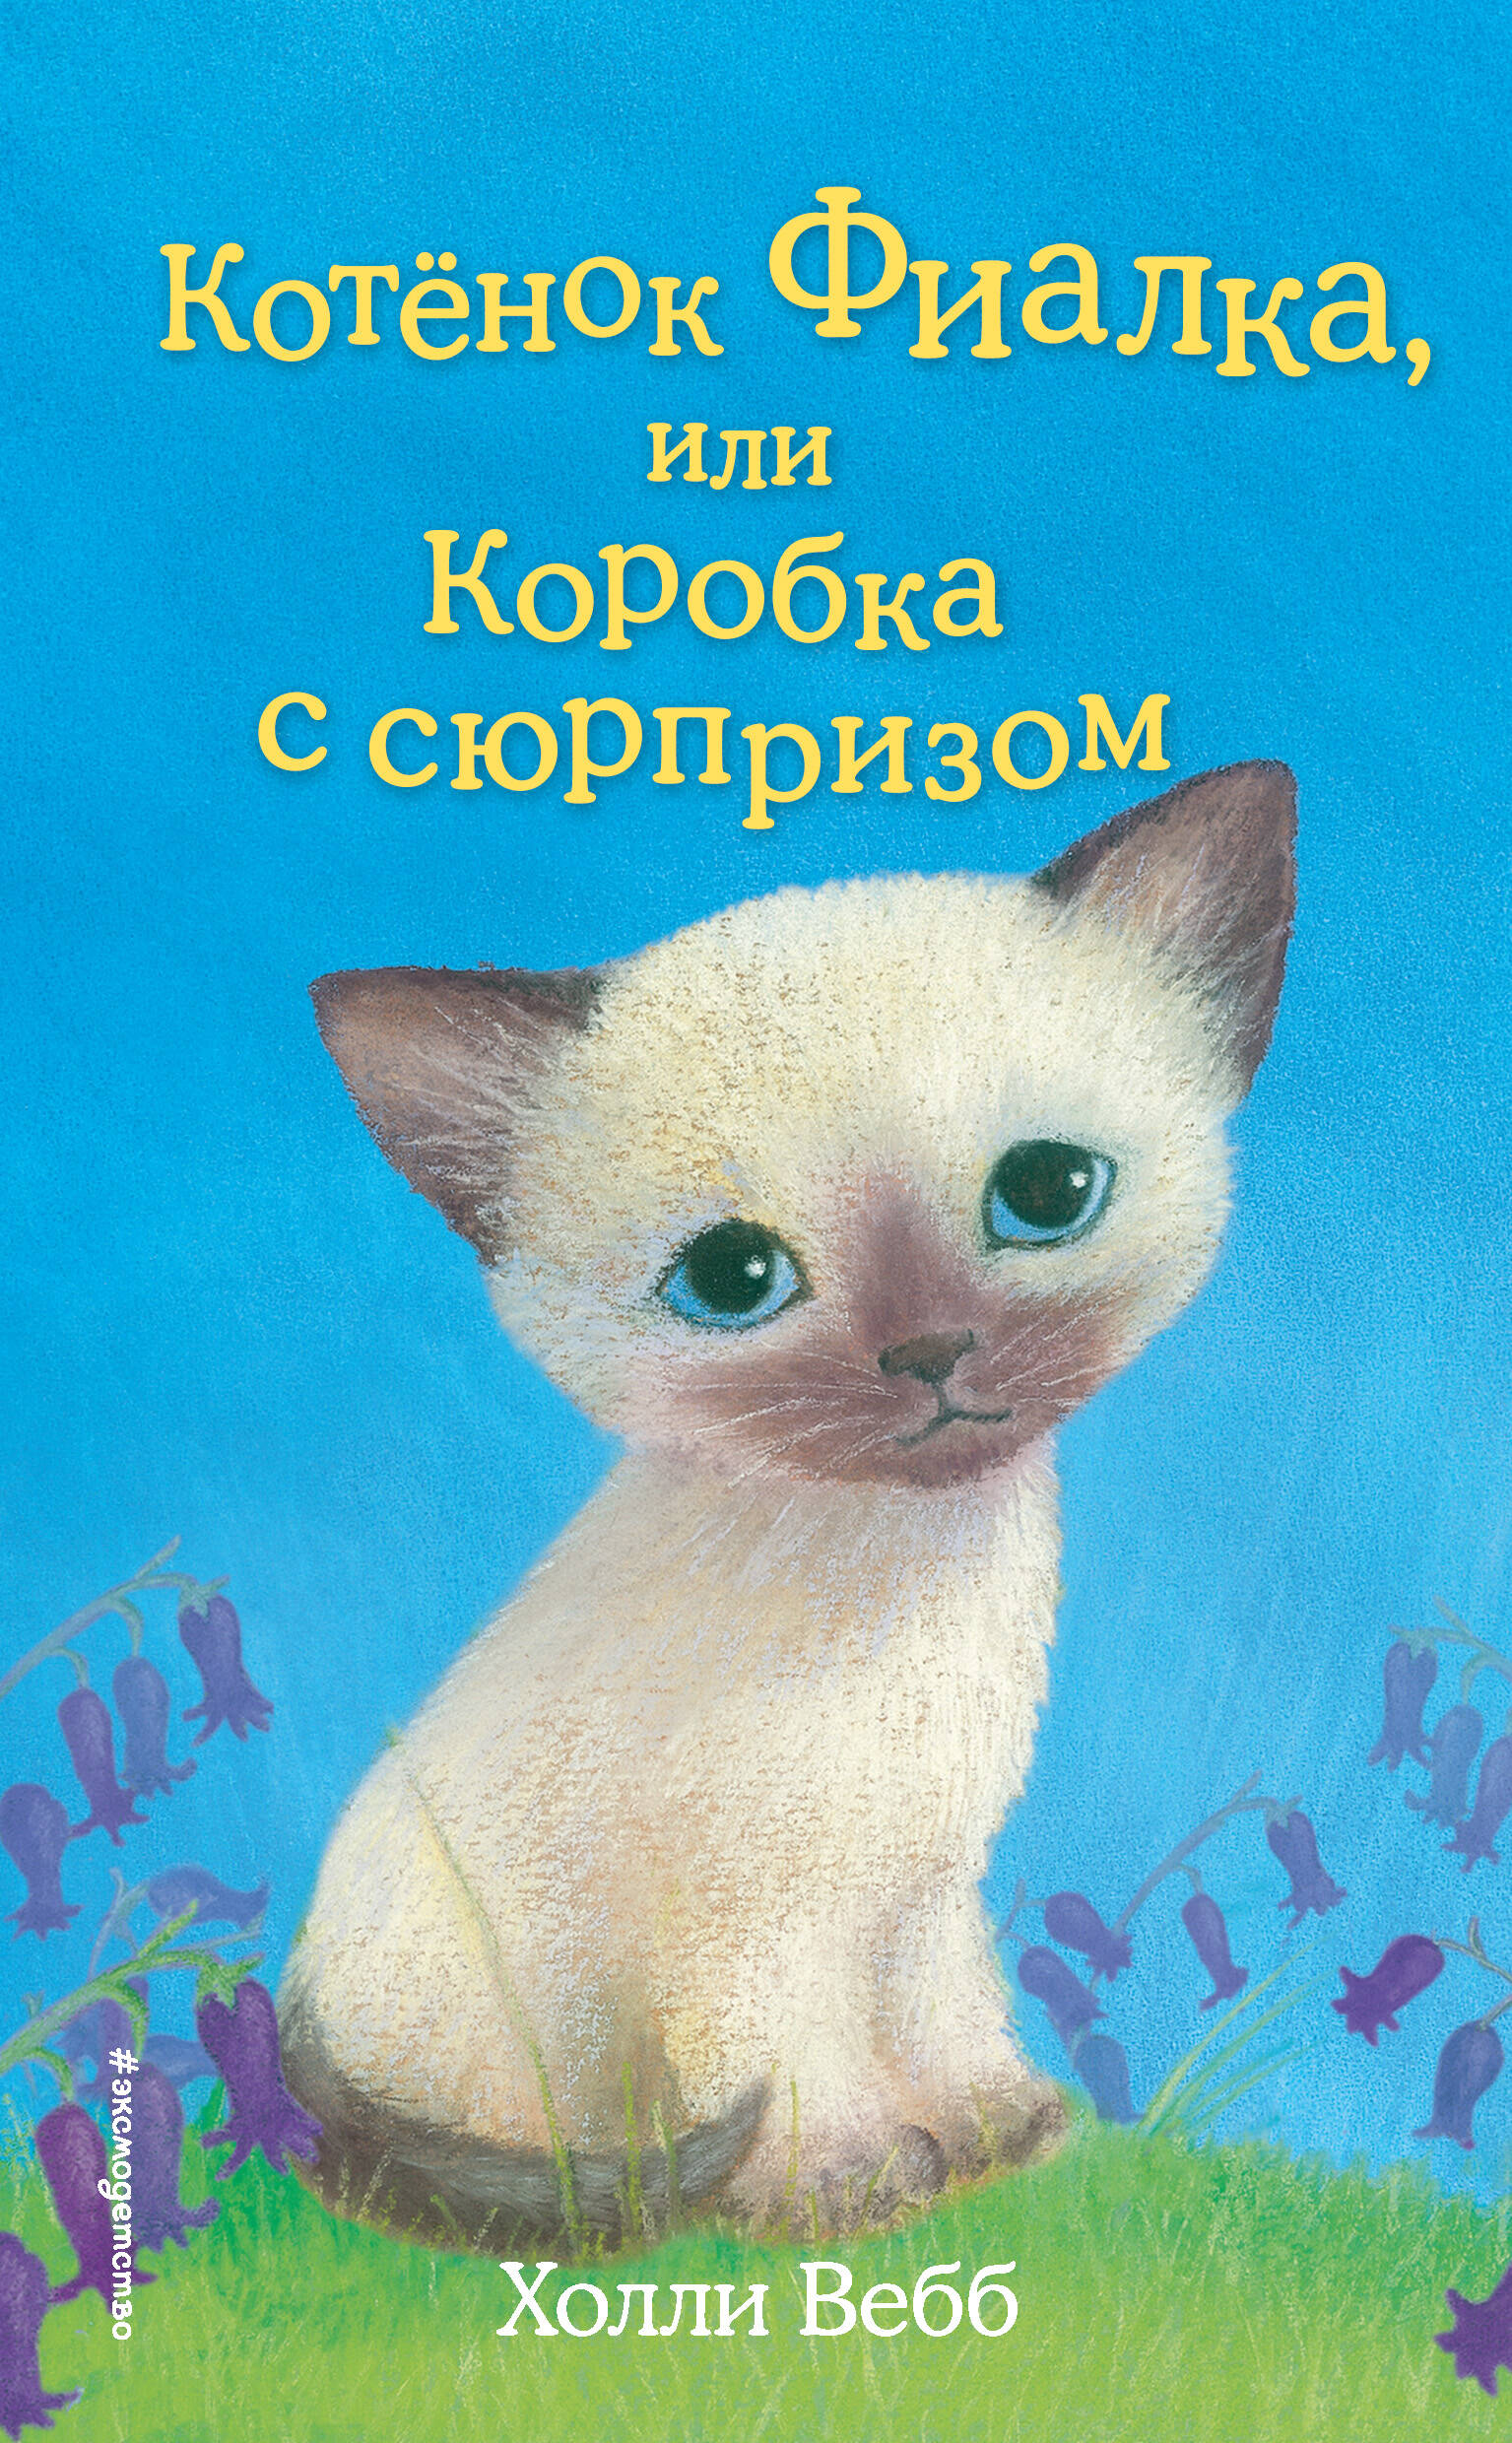 Котёнок Фиалка, или Коробка с сюрпризом (выпуск 9)